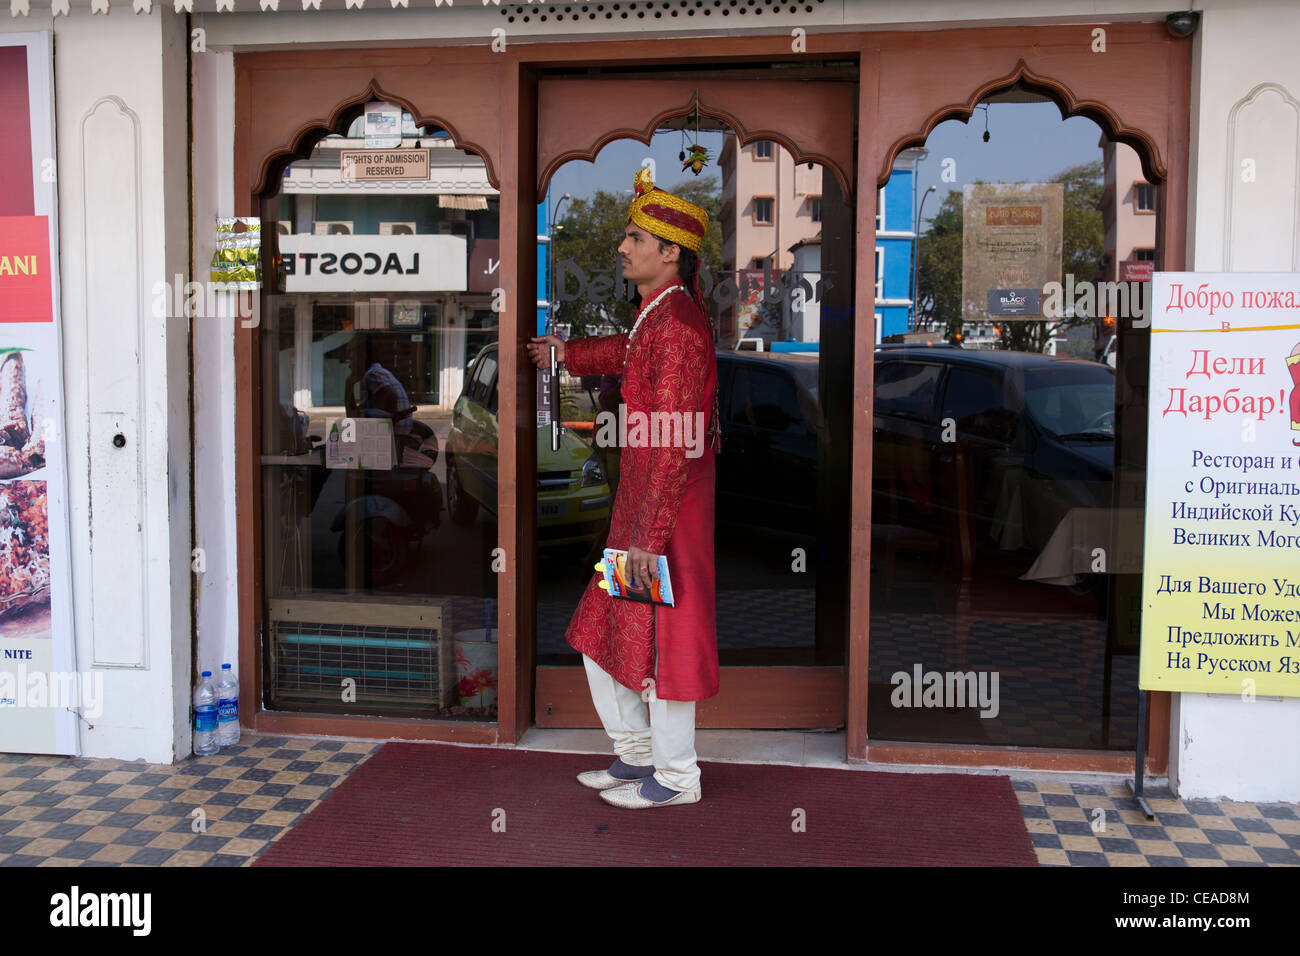 Delhi Darbar  Restaurant in Panjim Stock Photo